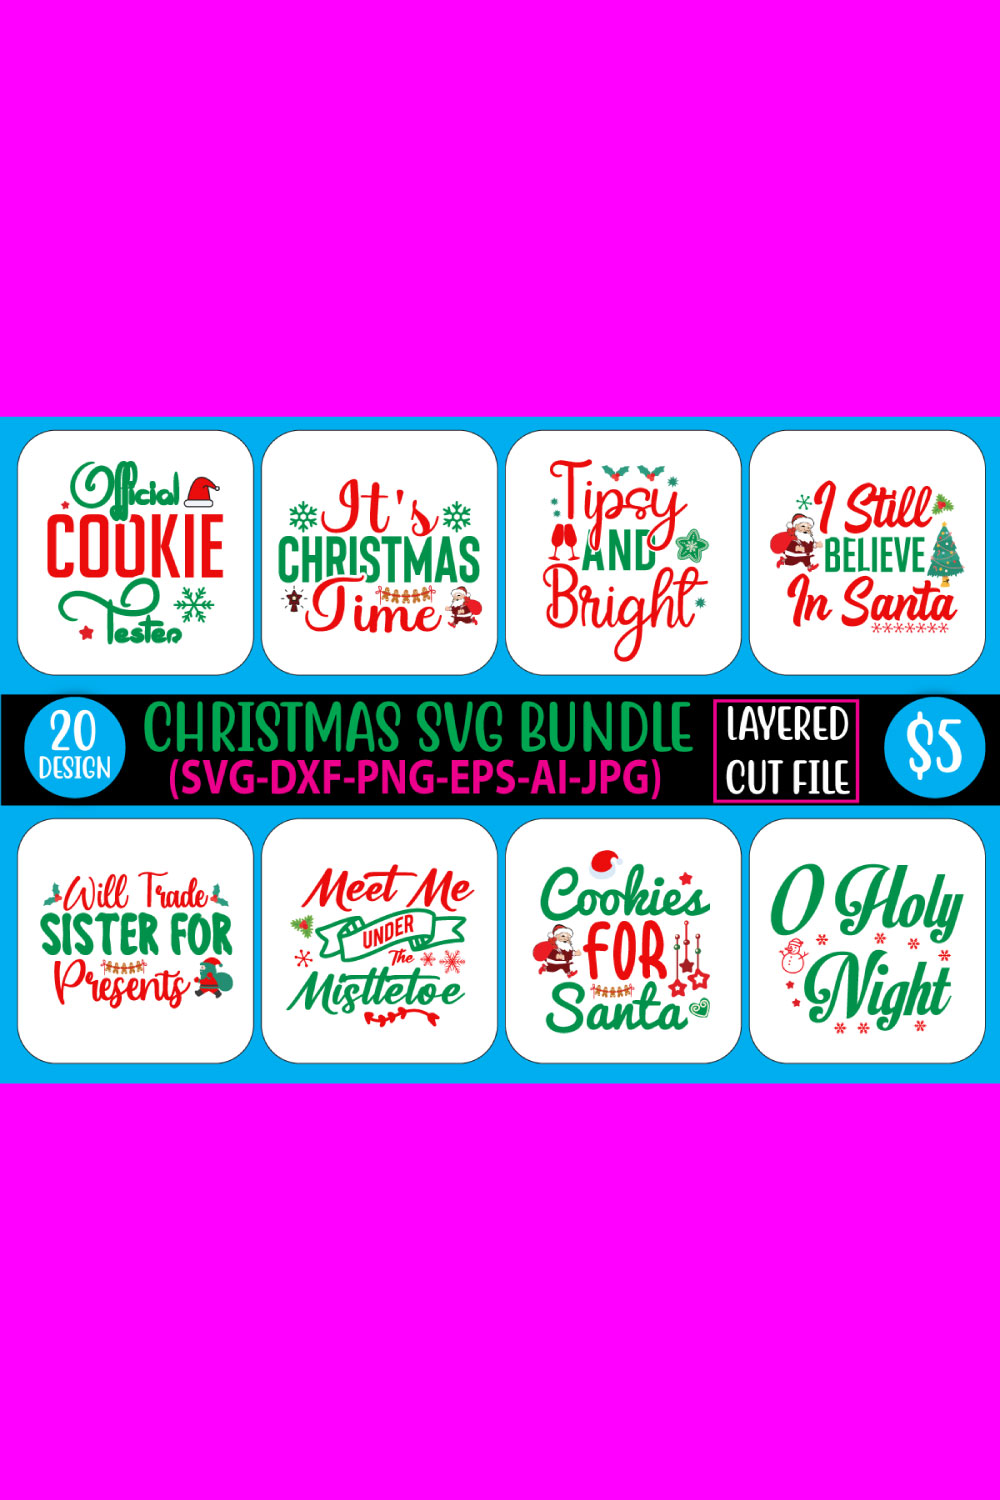 Christmas SVG Bundle Design pinterest image.